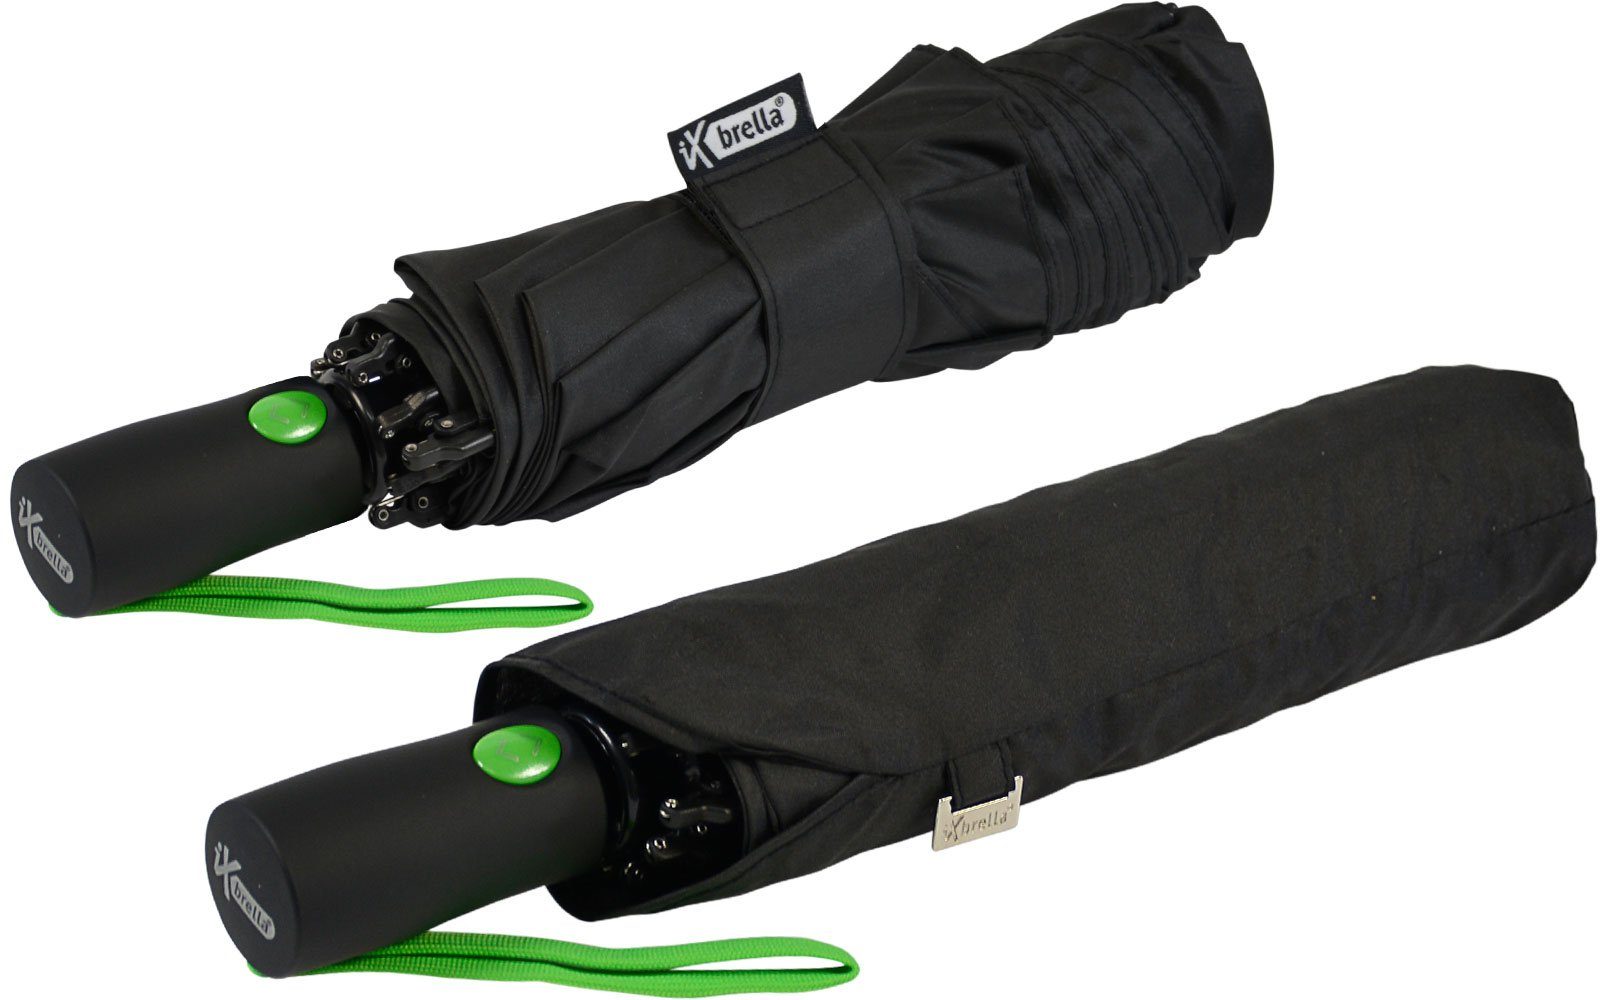 Speichen mit iX-brella bunten Fiberglas-Automatiksch, umgekehrt Reverse schwarz-grün Taschenregenschirm öffnender stabilen